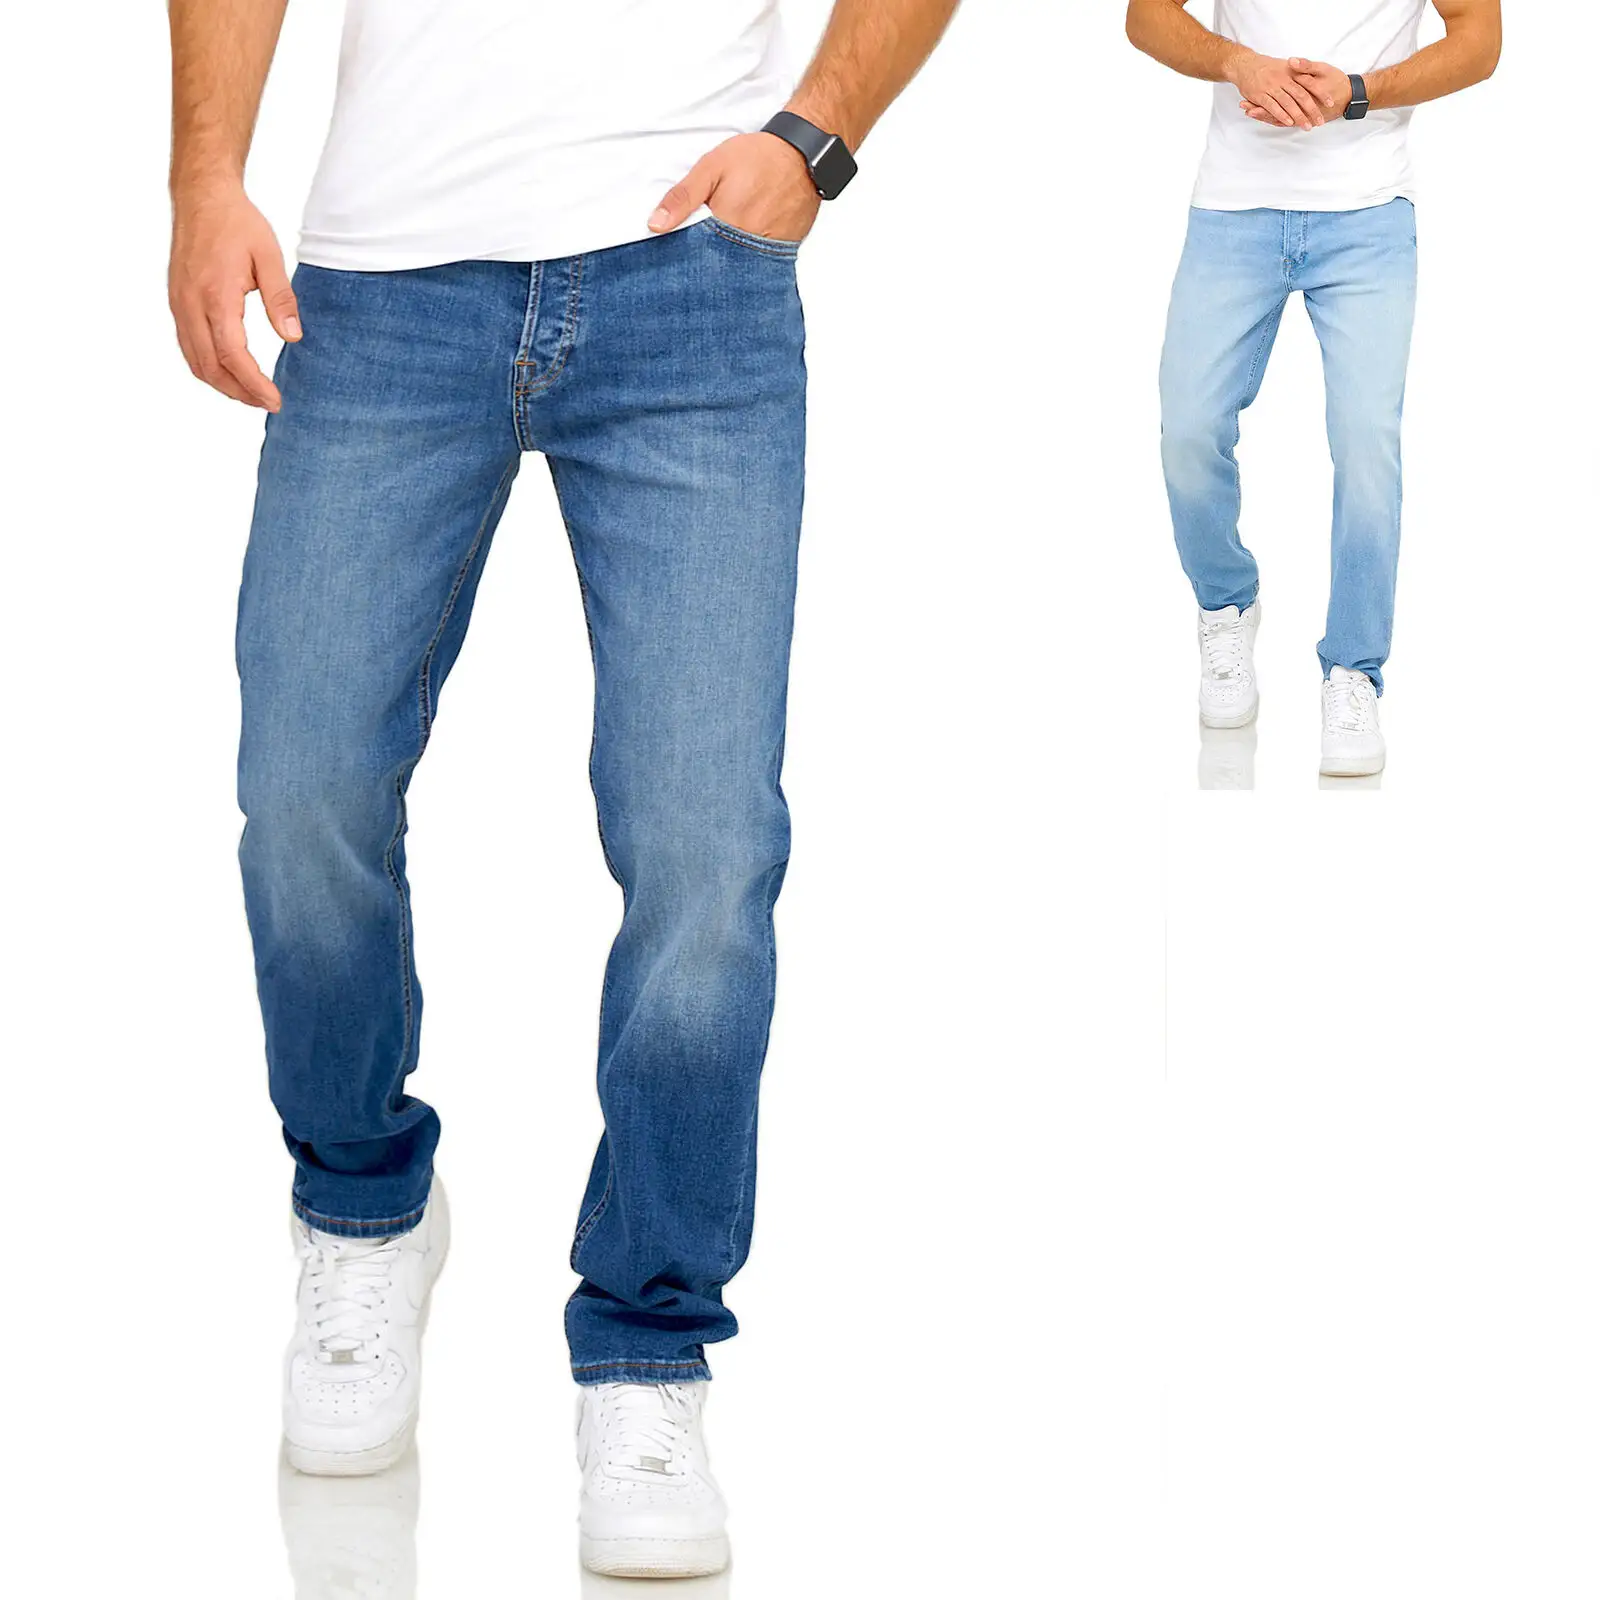 جينز رجالي من قماش الدنيم يلائم الأحجام العادية للرجال سروال رجالي من قماش الدنيم على الموضة سروال جينز كلاسيكي للرجال